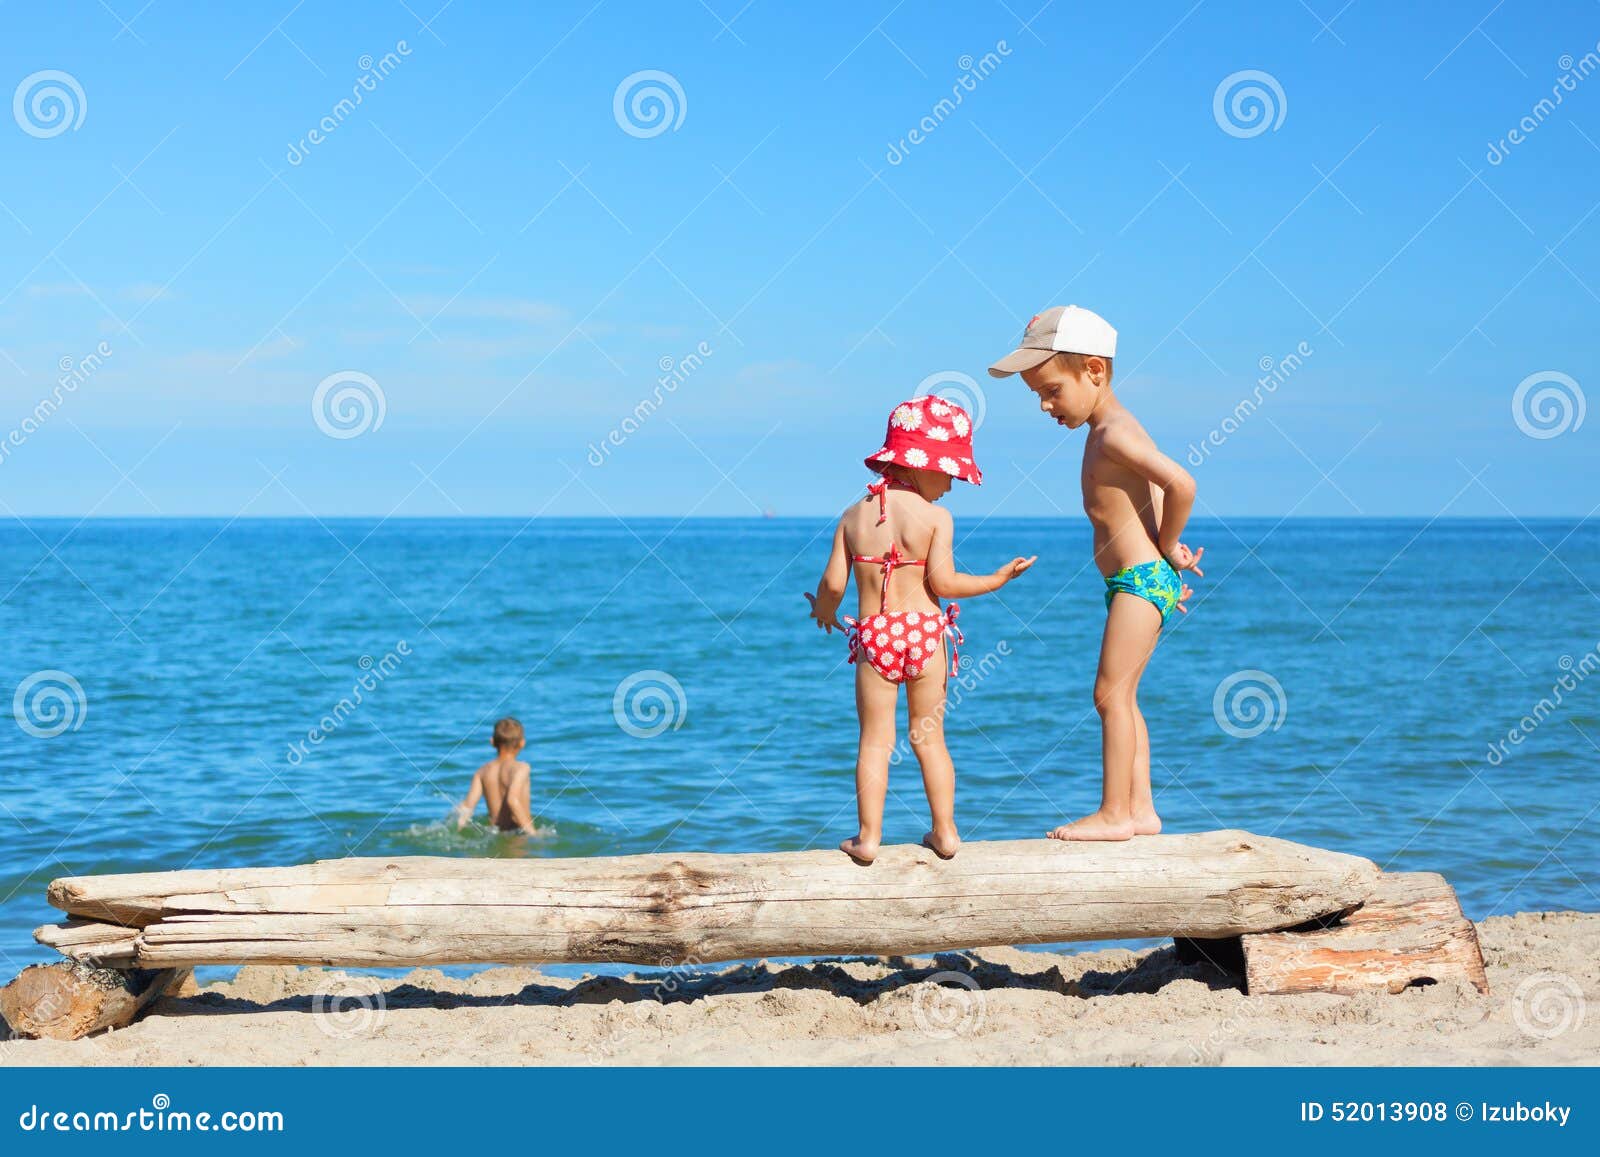 пляж с голыми детьми фото 82